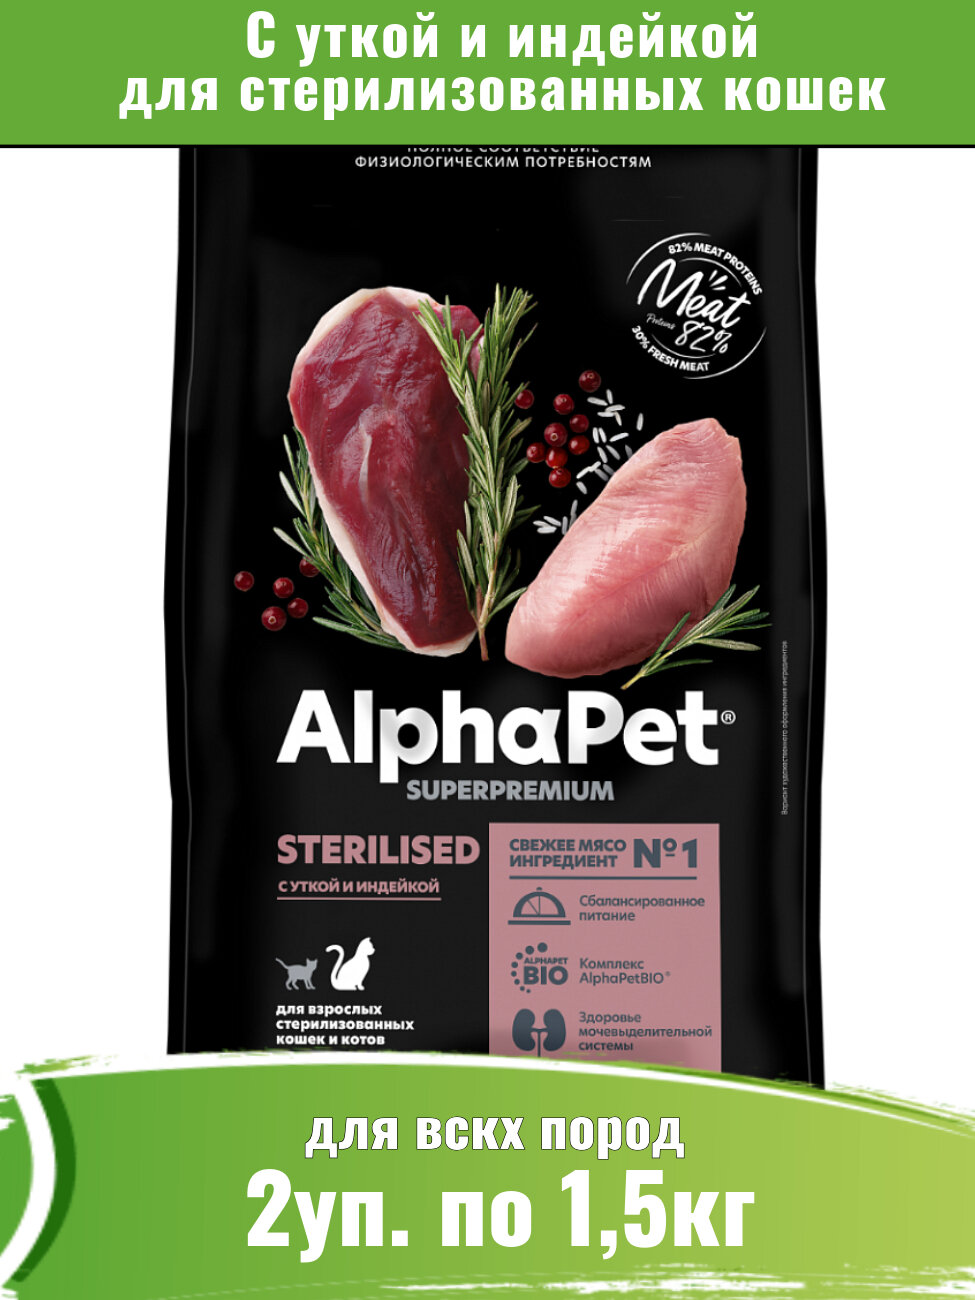 AlphaPet Superpremium (АльфаПет) 2уп по 1,5кг корм для стерилизованных кошек с уткой и индейкой